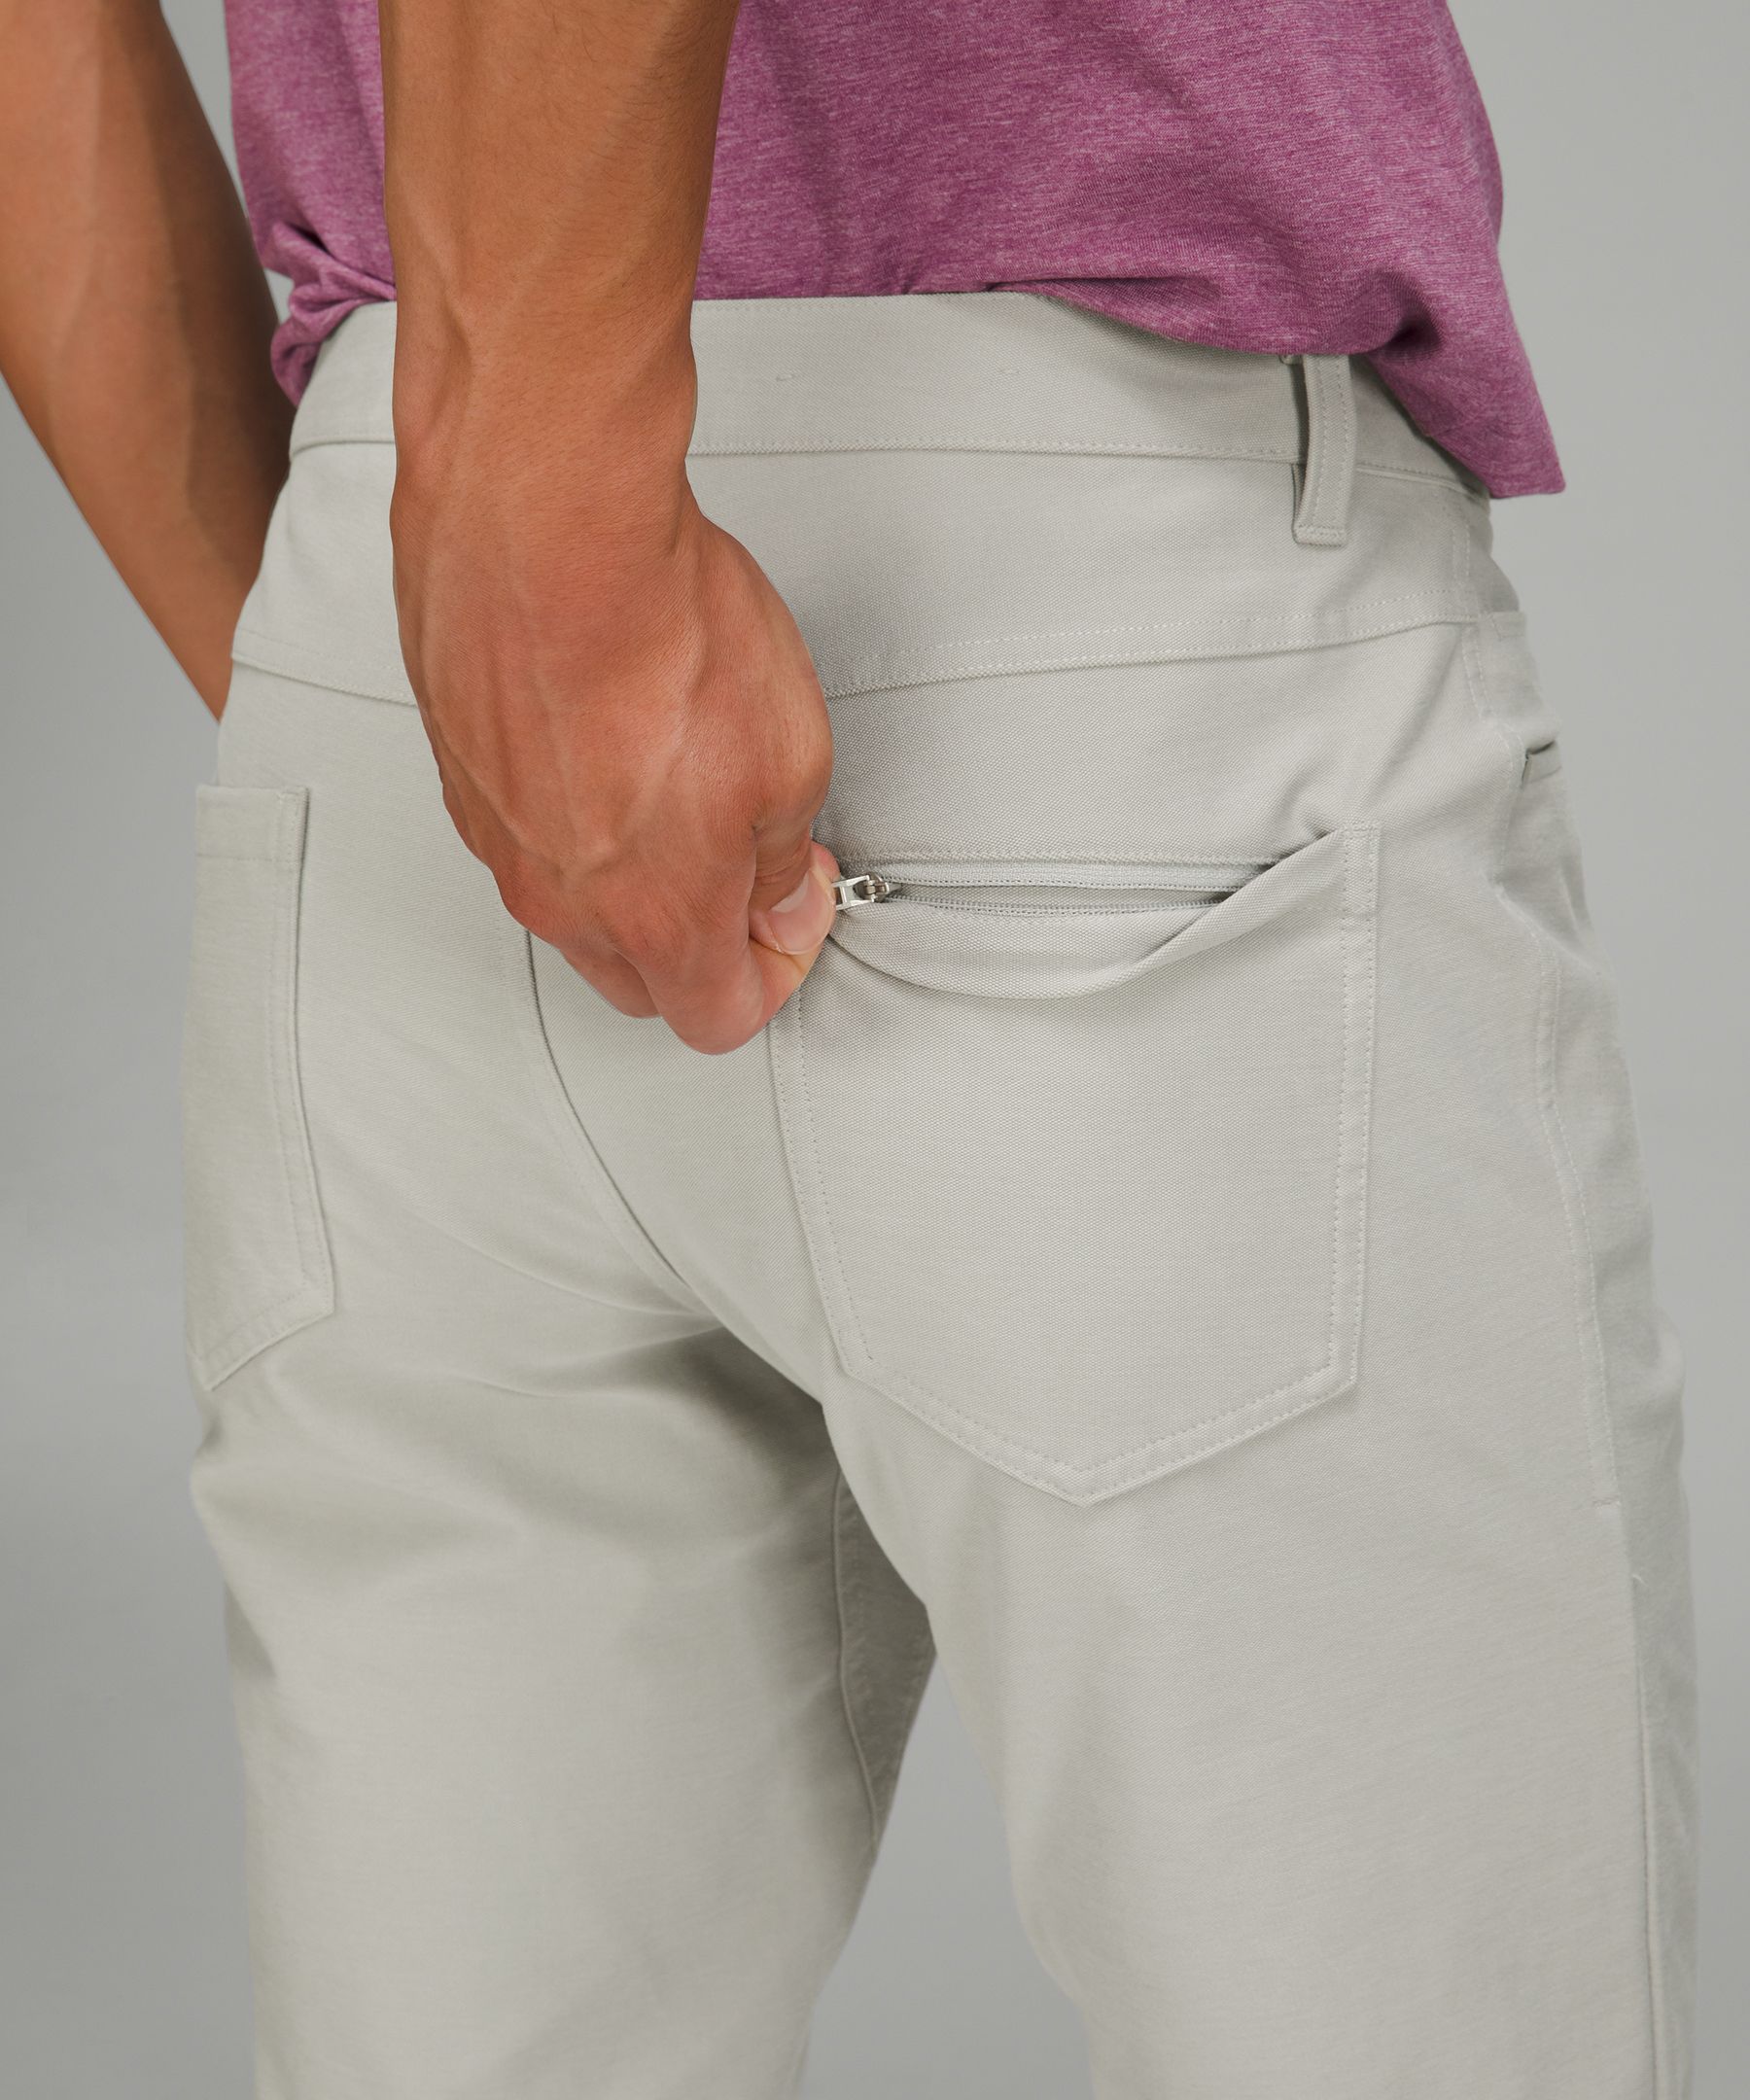 Lululemon athletica ABC Slim-Fit 5 Pocket Pant 32L *Utilitech